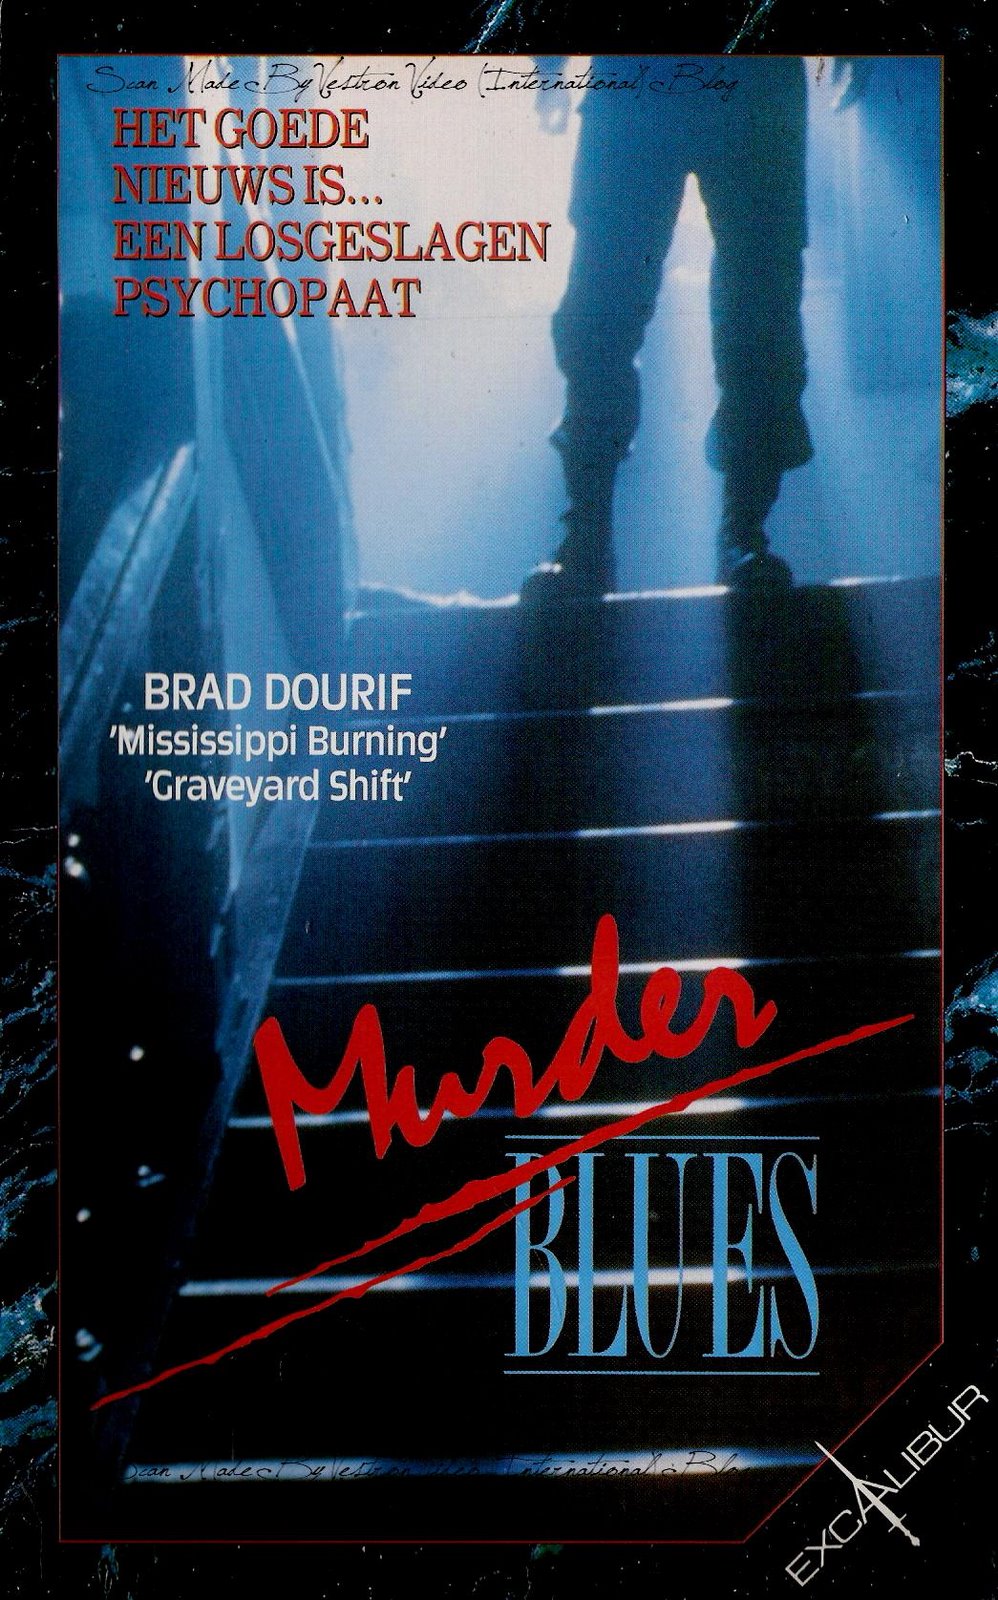 Murder Blues (1991) Screenshot 4